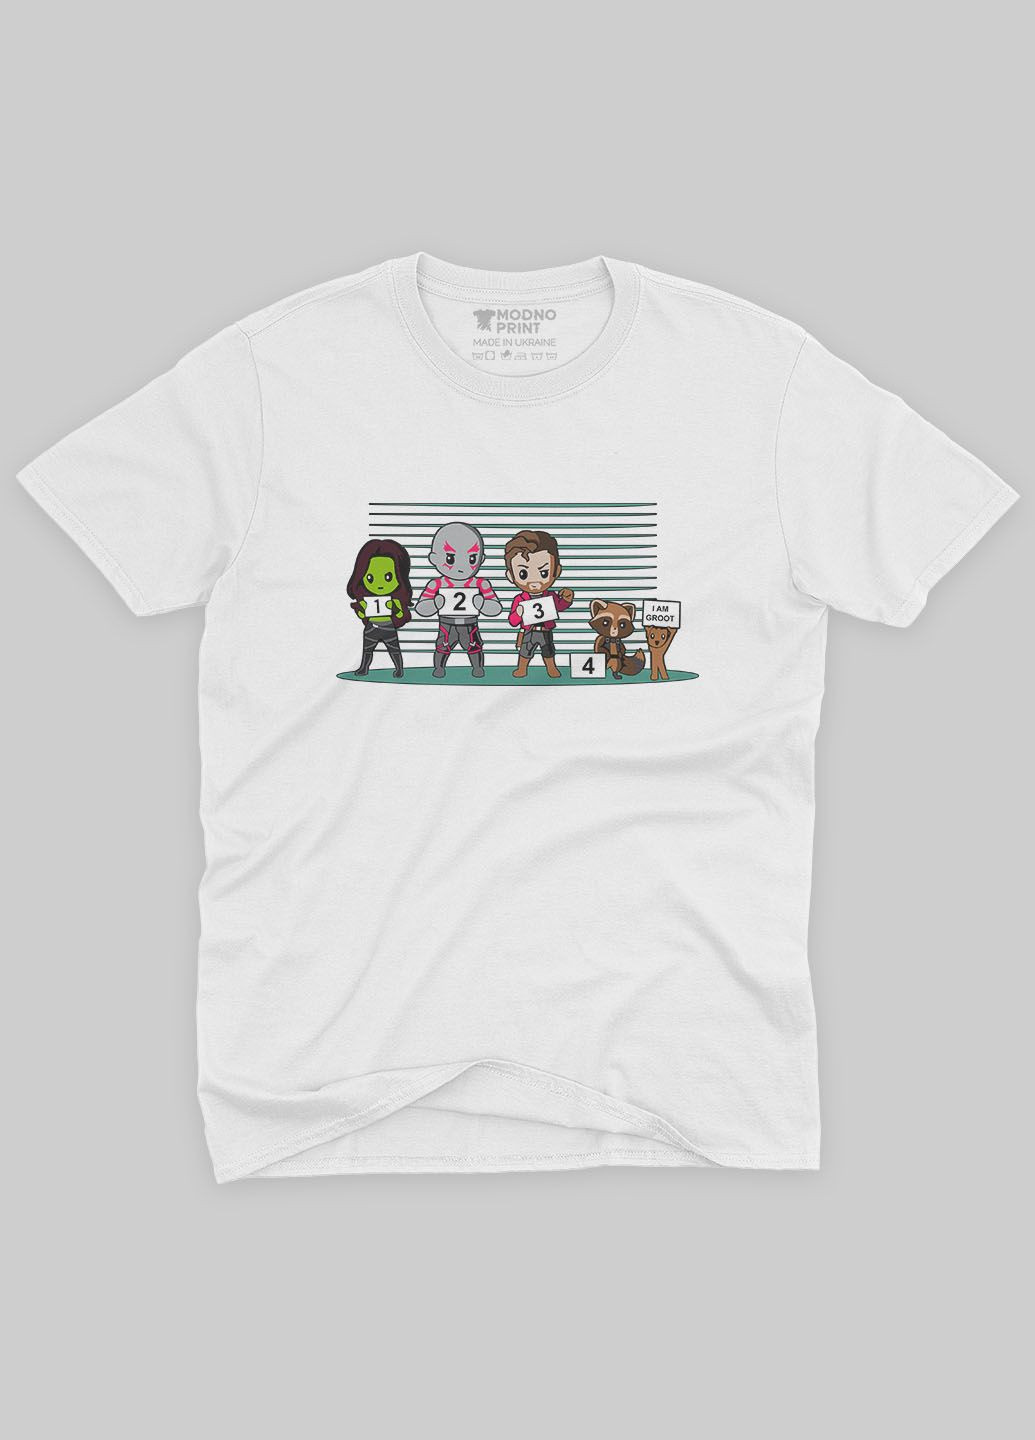 Белая демисезонная футболка для мальчика с принтом супергероев - стражи галактики (ts001-1-whi-006-017-009-b) Modno